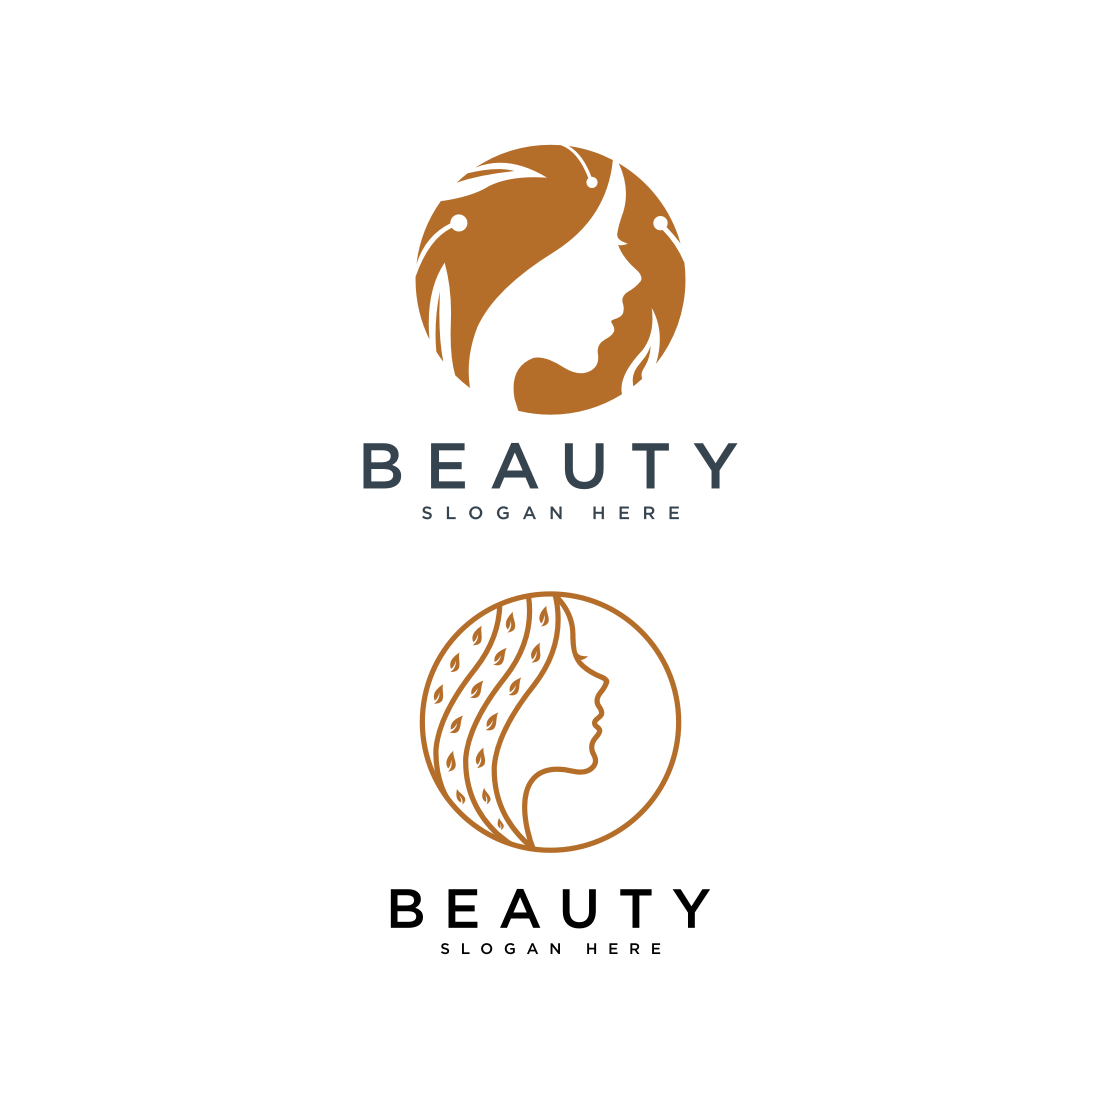 Beauty Woman Face Logo Vector Design.